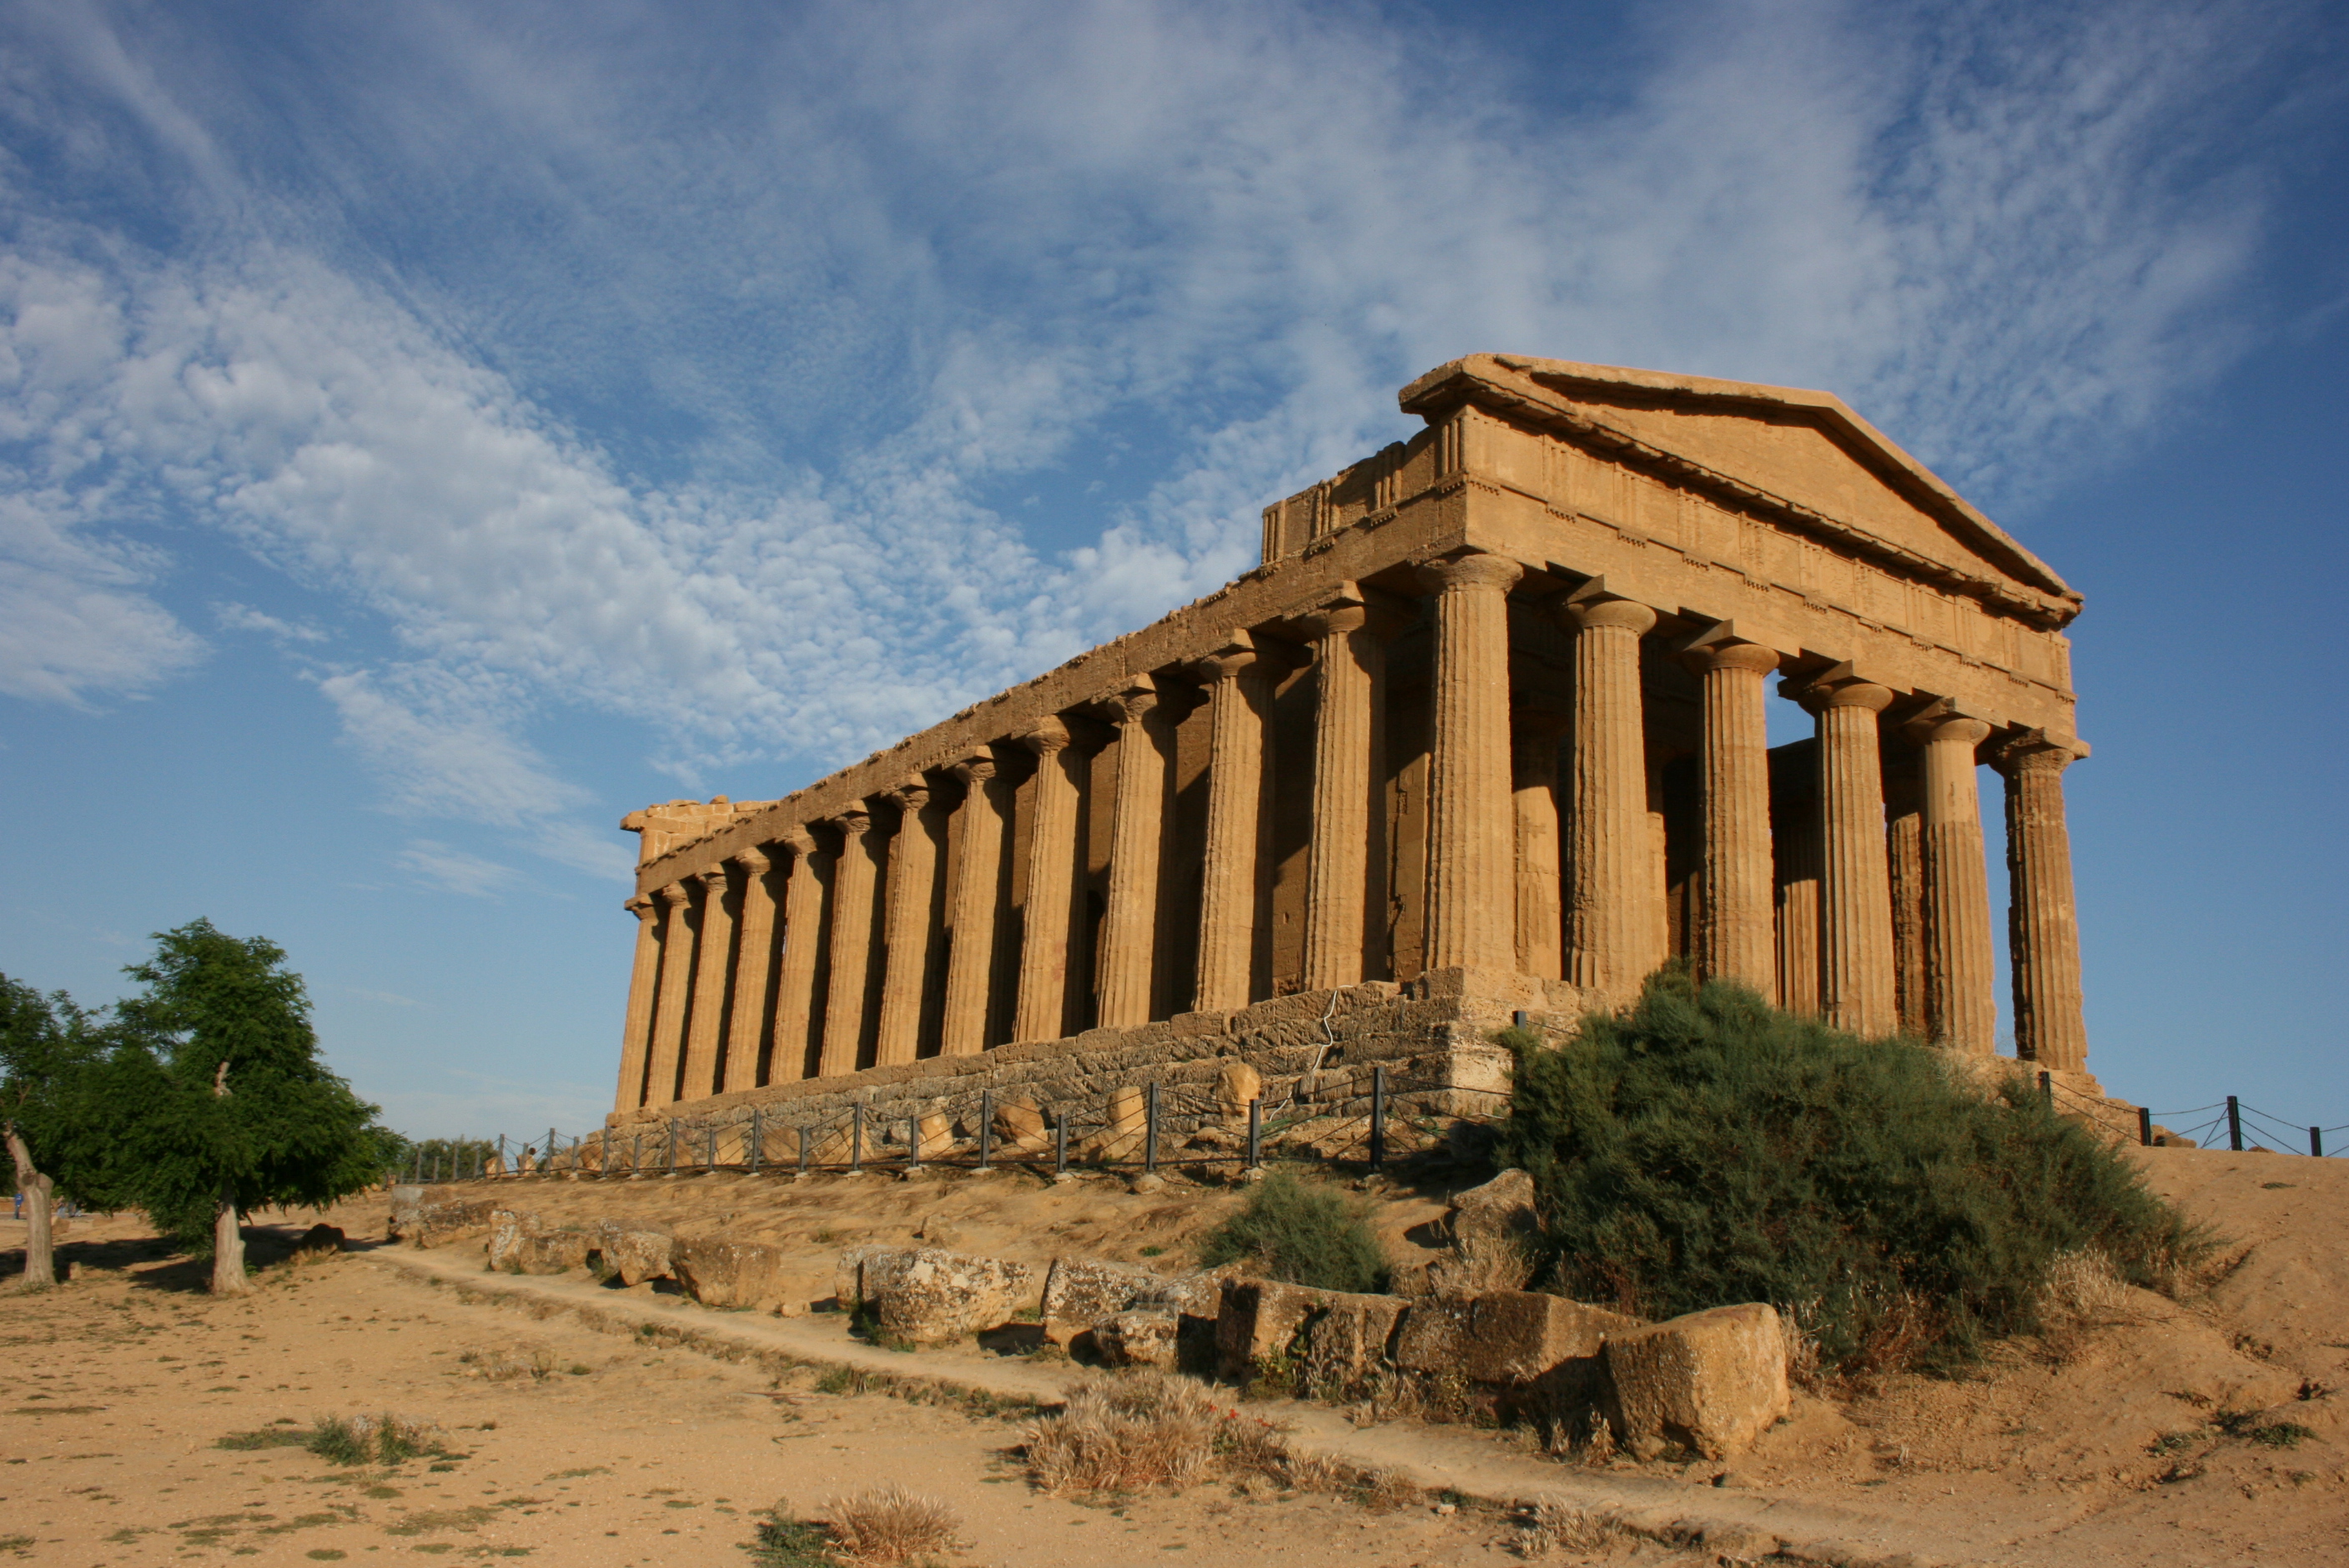 Ιταλική πόλη καλεί Gucci: Έχουμε και εμείς ελληνικούς ναούς…